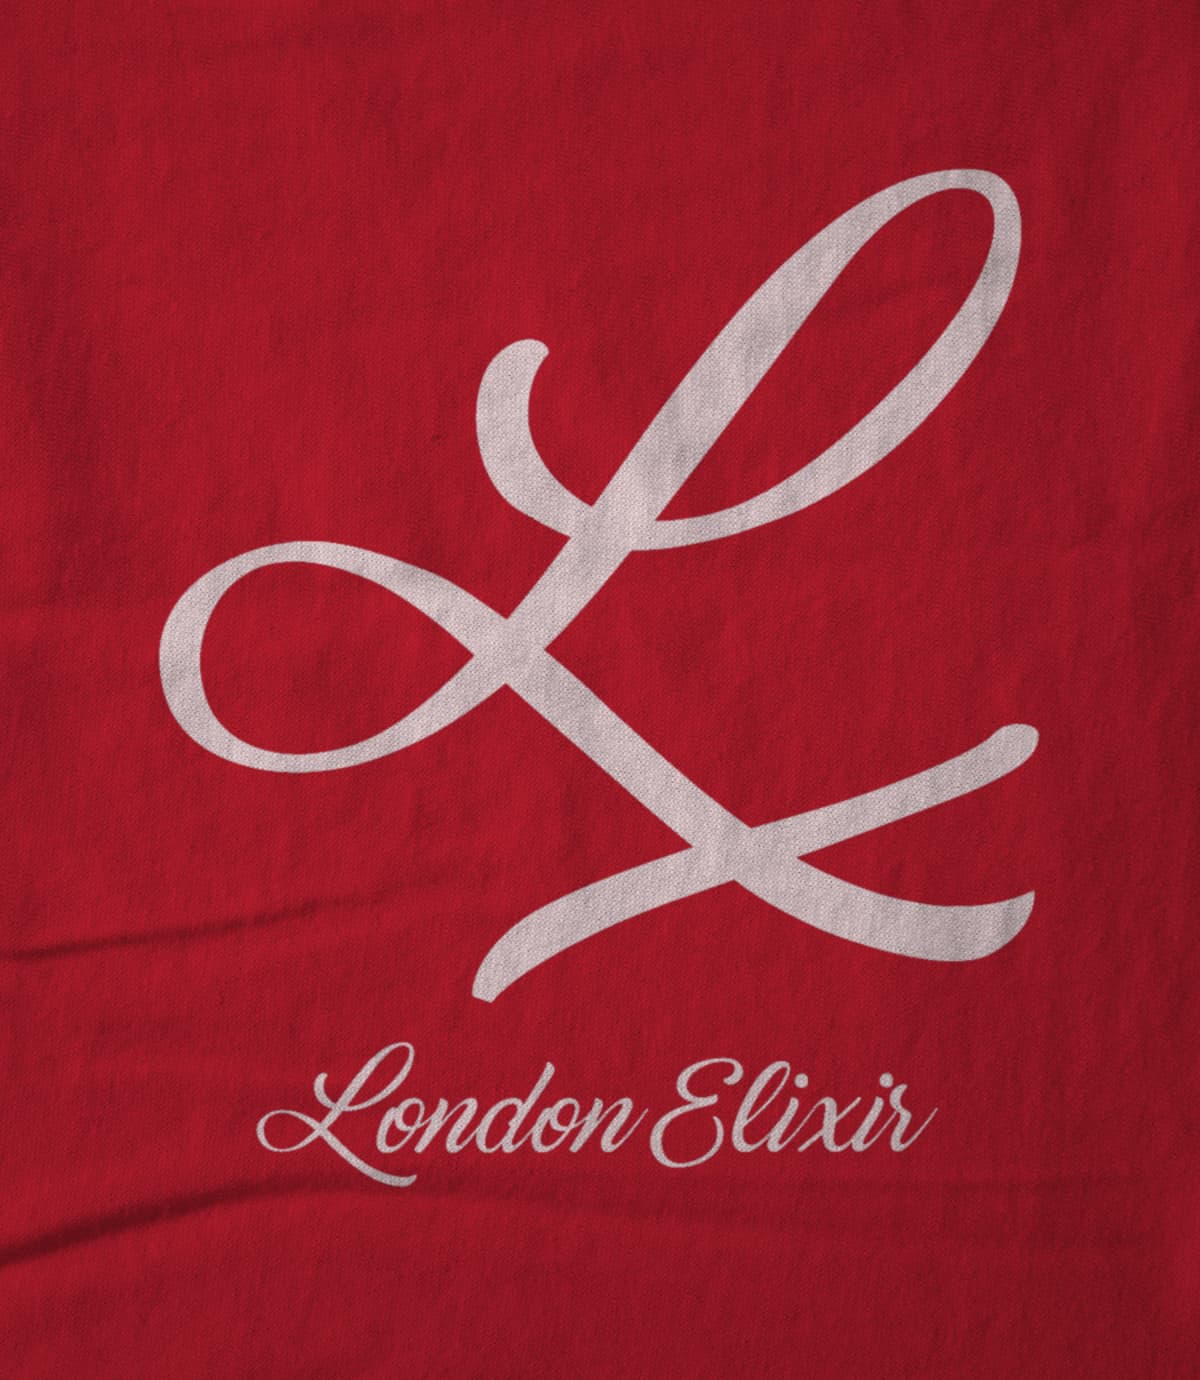 London elixir lx 1626362963